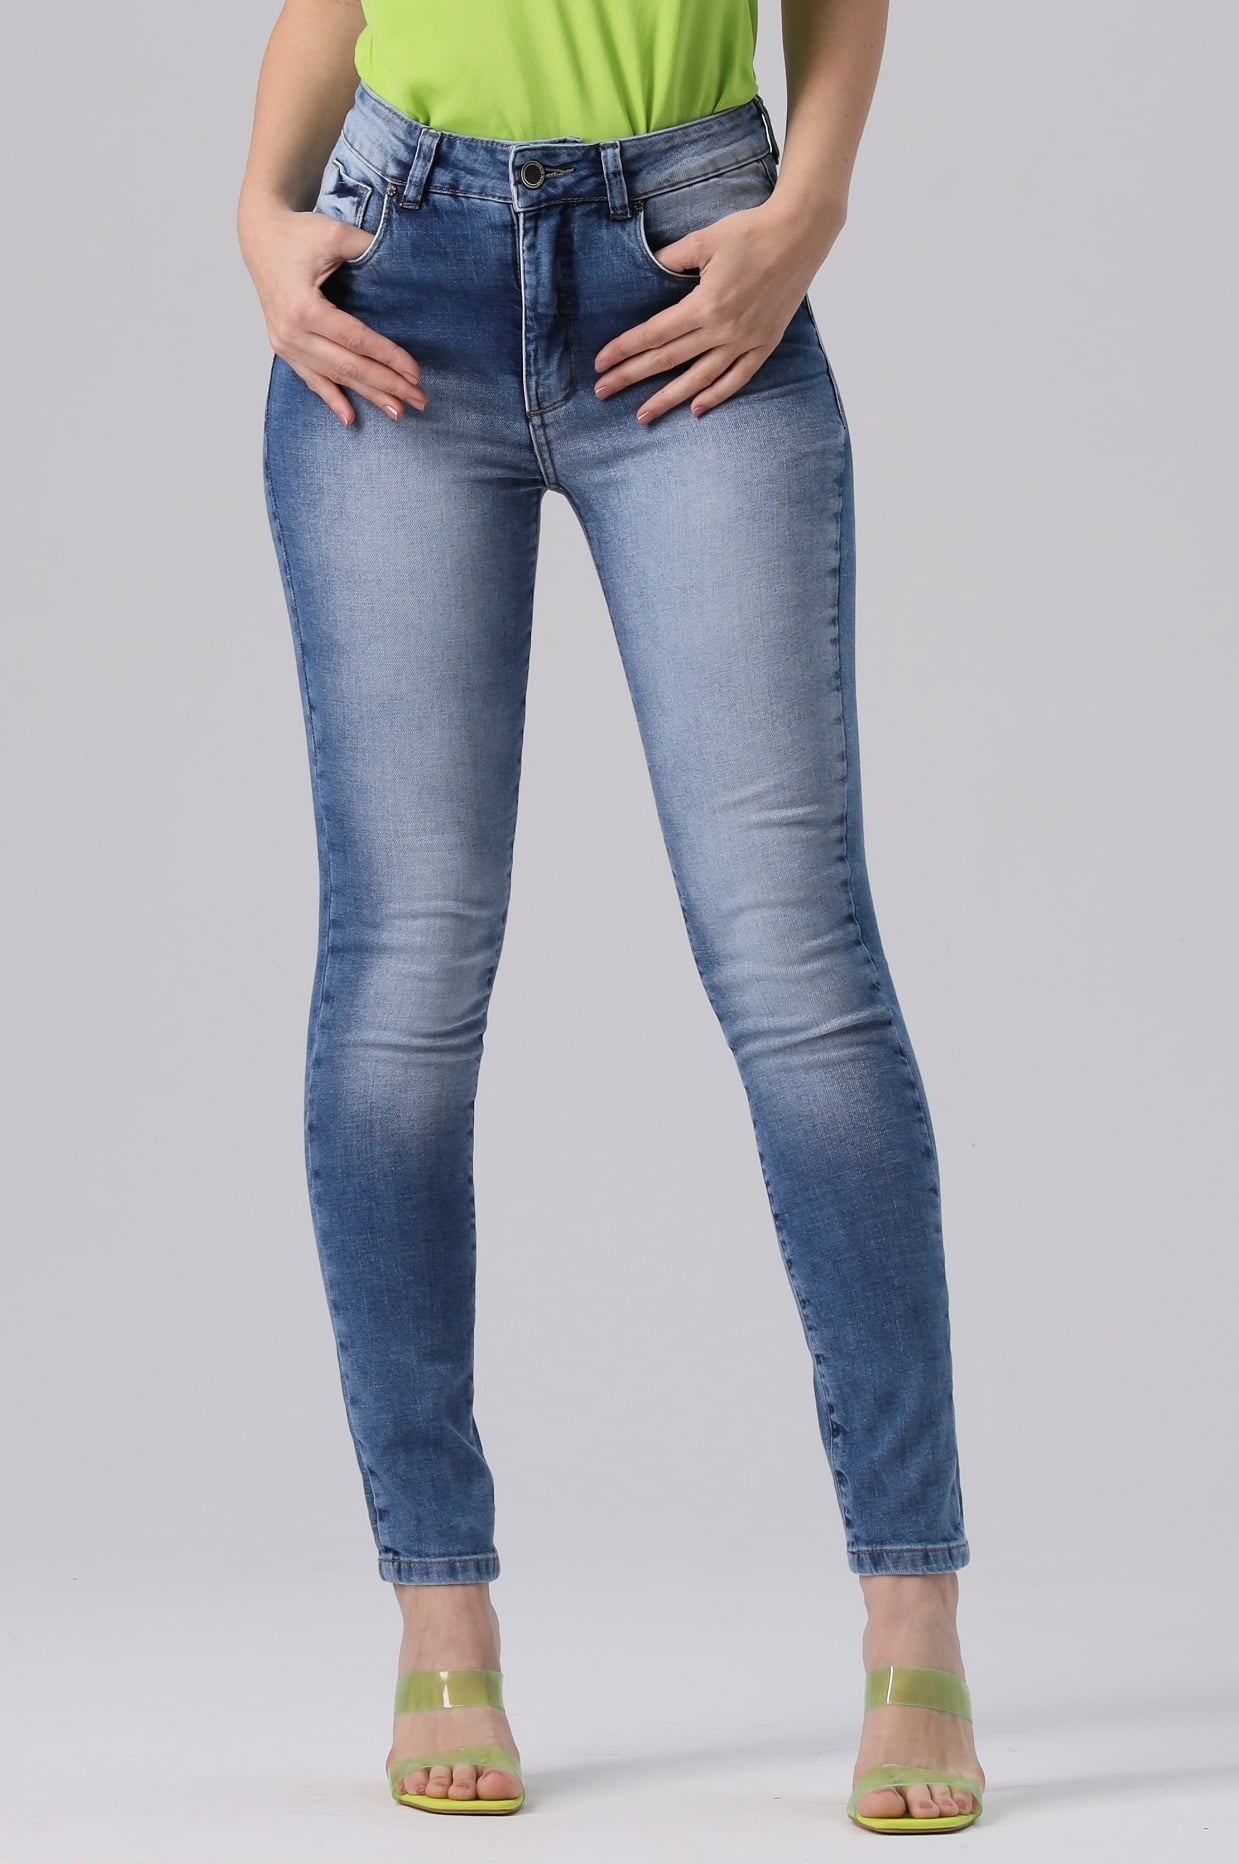 Calça Jeans Feminina Cintura Alta Skinny Cores Cinza Claro Tamanho 34